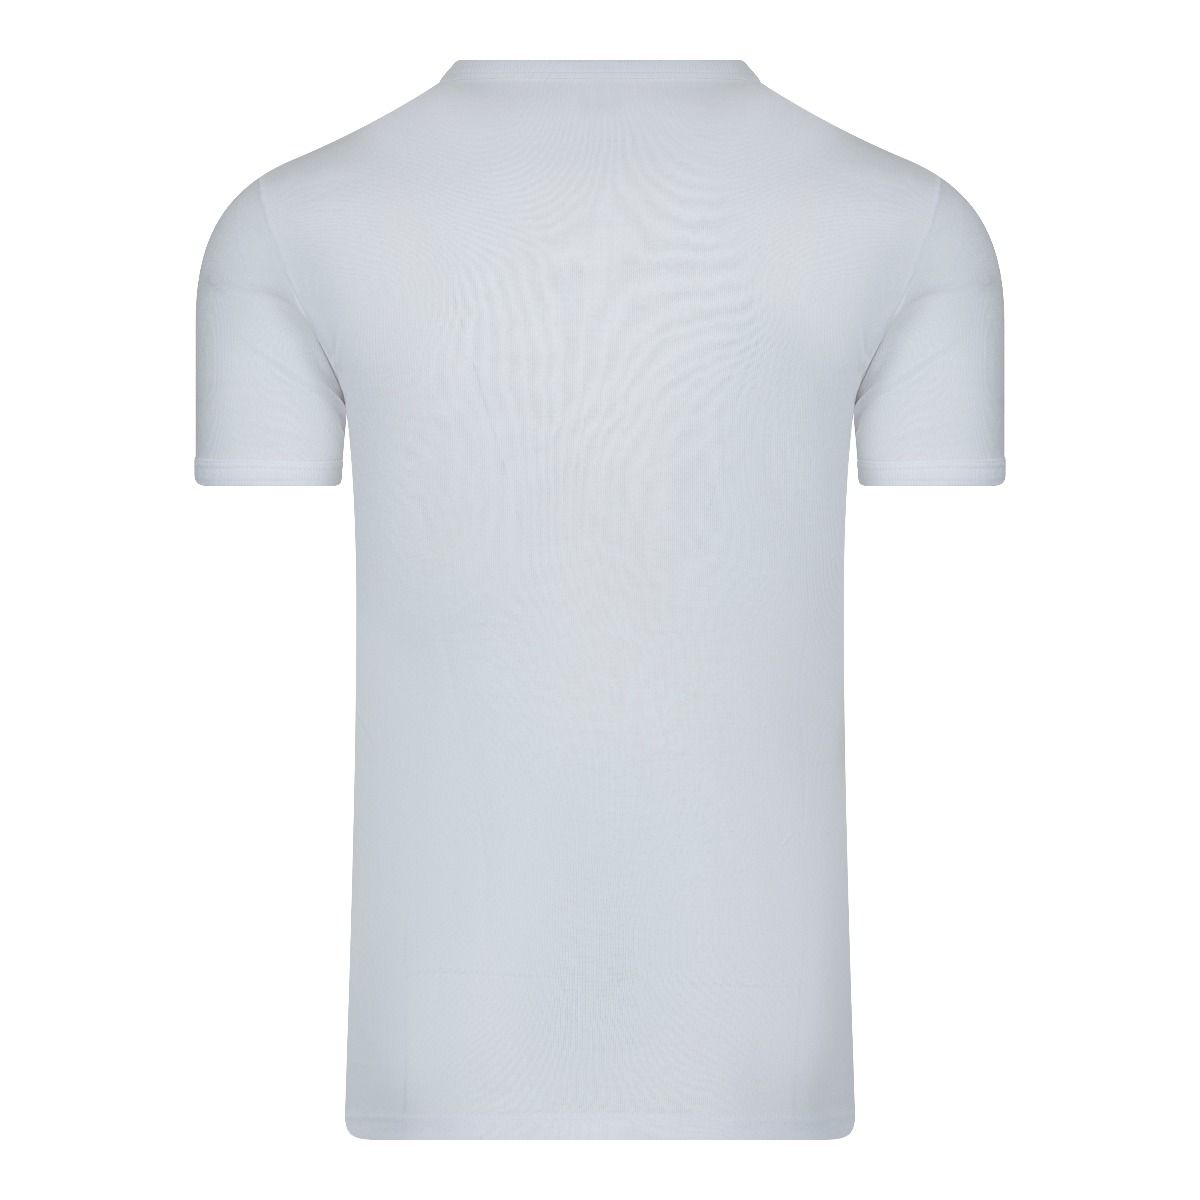 schot Onmiddellijk het is nutteloos Beeren T-Shirt wit m3000 basis T-Shirt van honderd procent katoen.